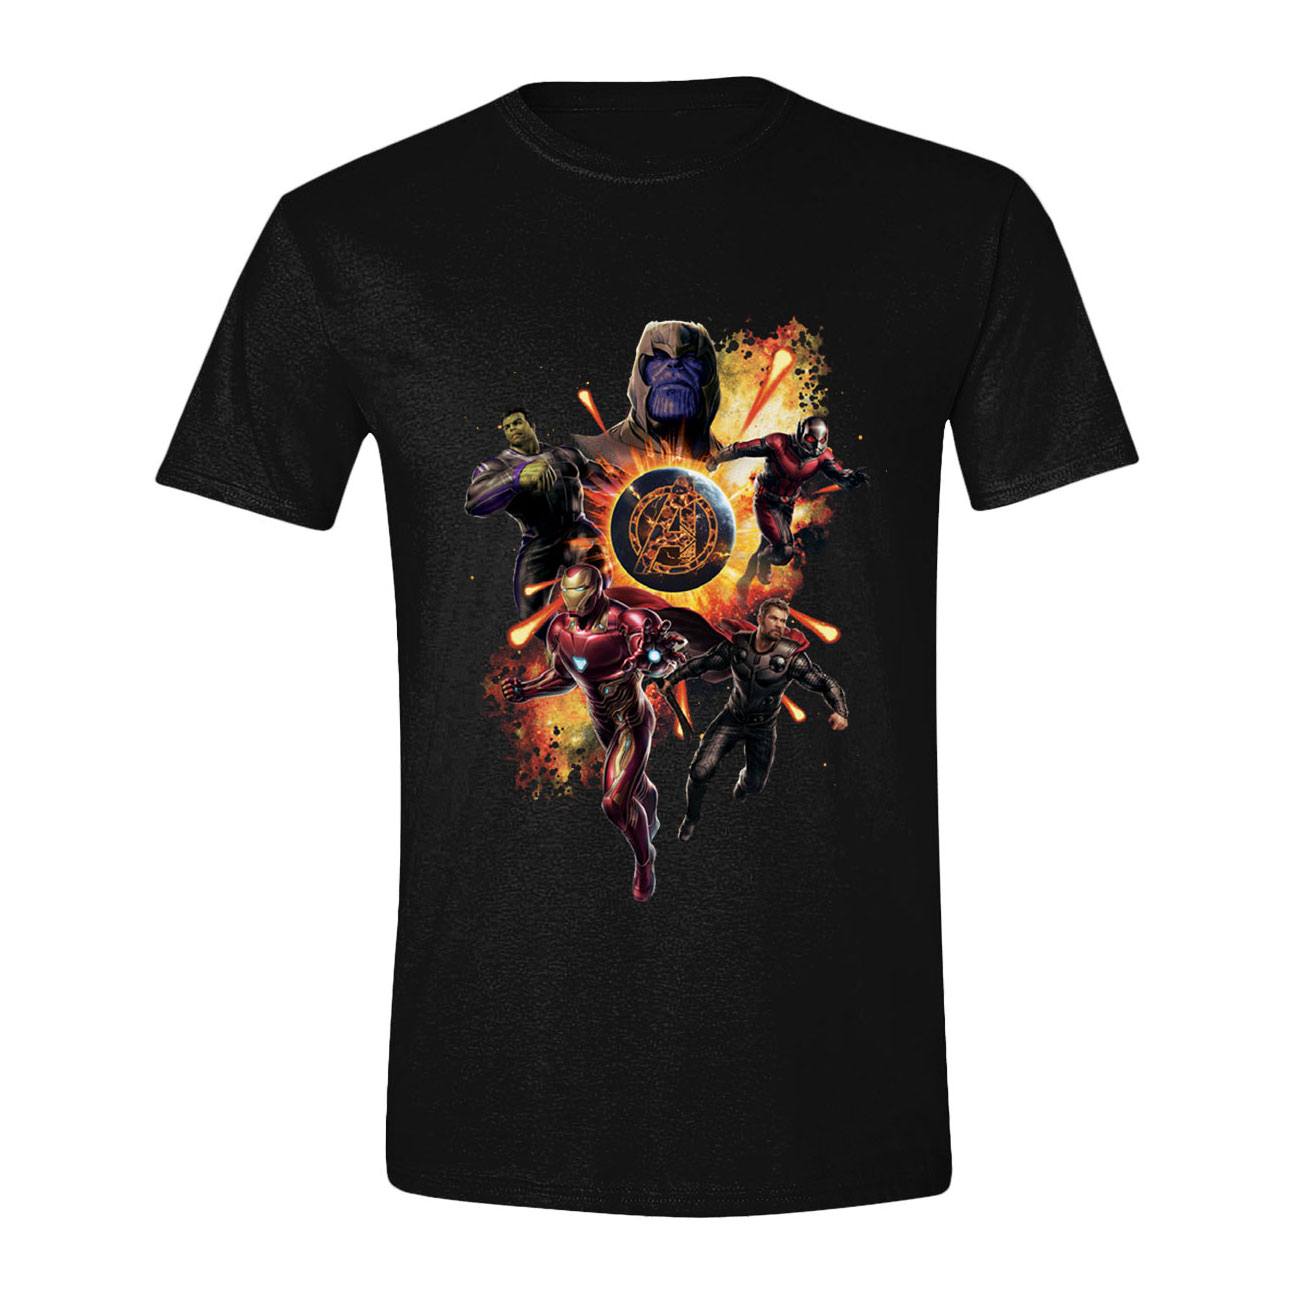 Avengers : Endgame T-Shirt Thanos & Avengers (XL)